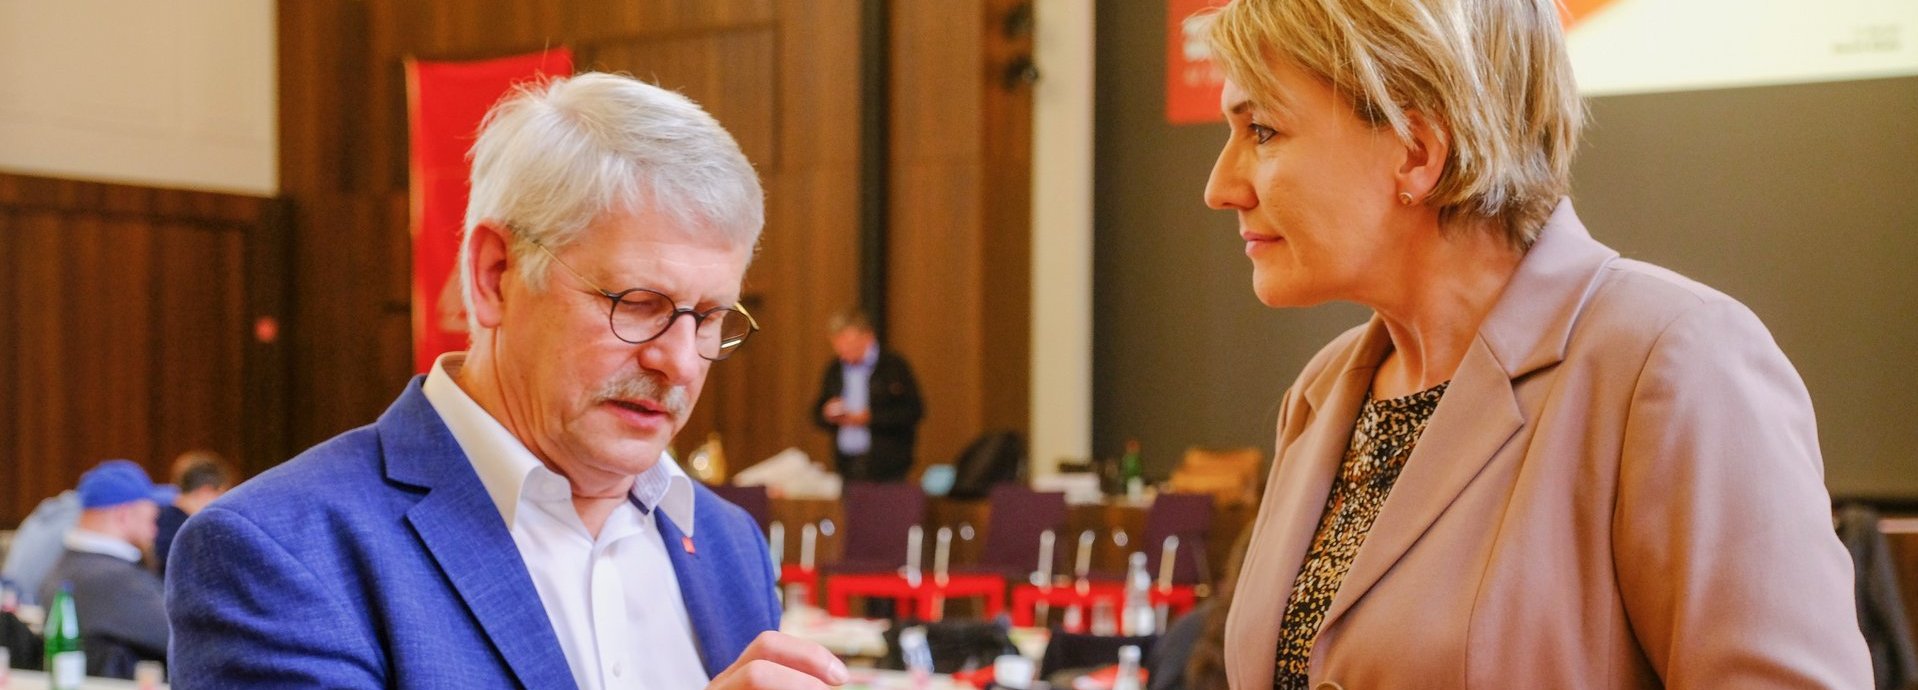 IG-Metall-Bezirksleiter Meinhard Geiken und BEE-Präsidentin Dr. Simone Peter nebeneinander